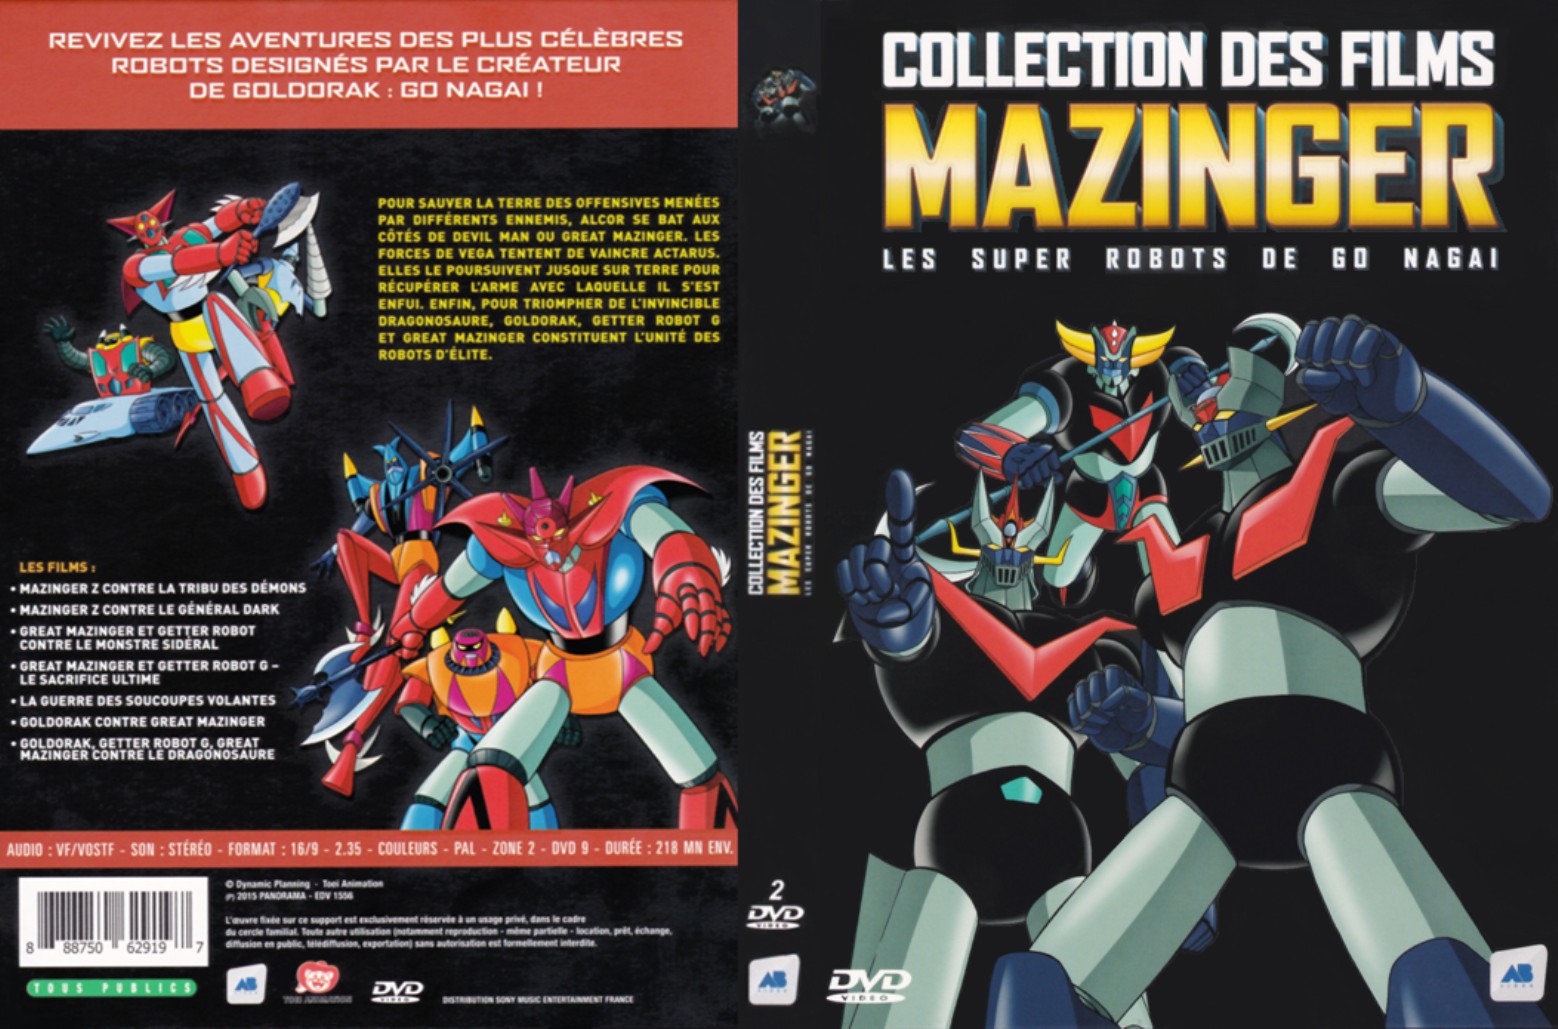 Jaquette DVD Collection des films Mazinger